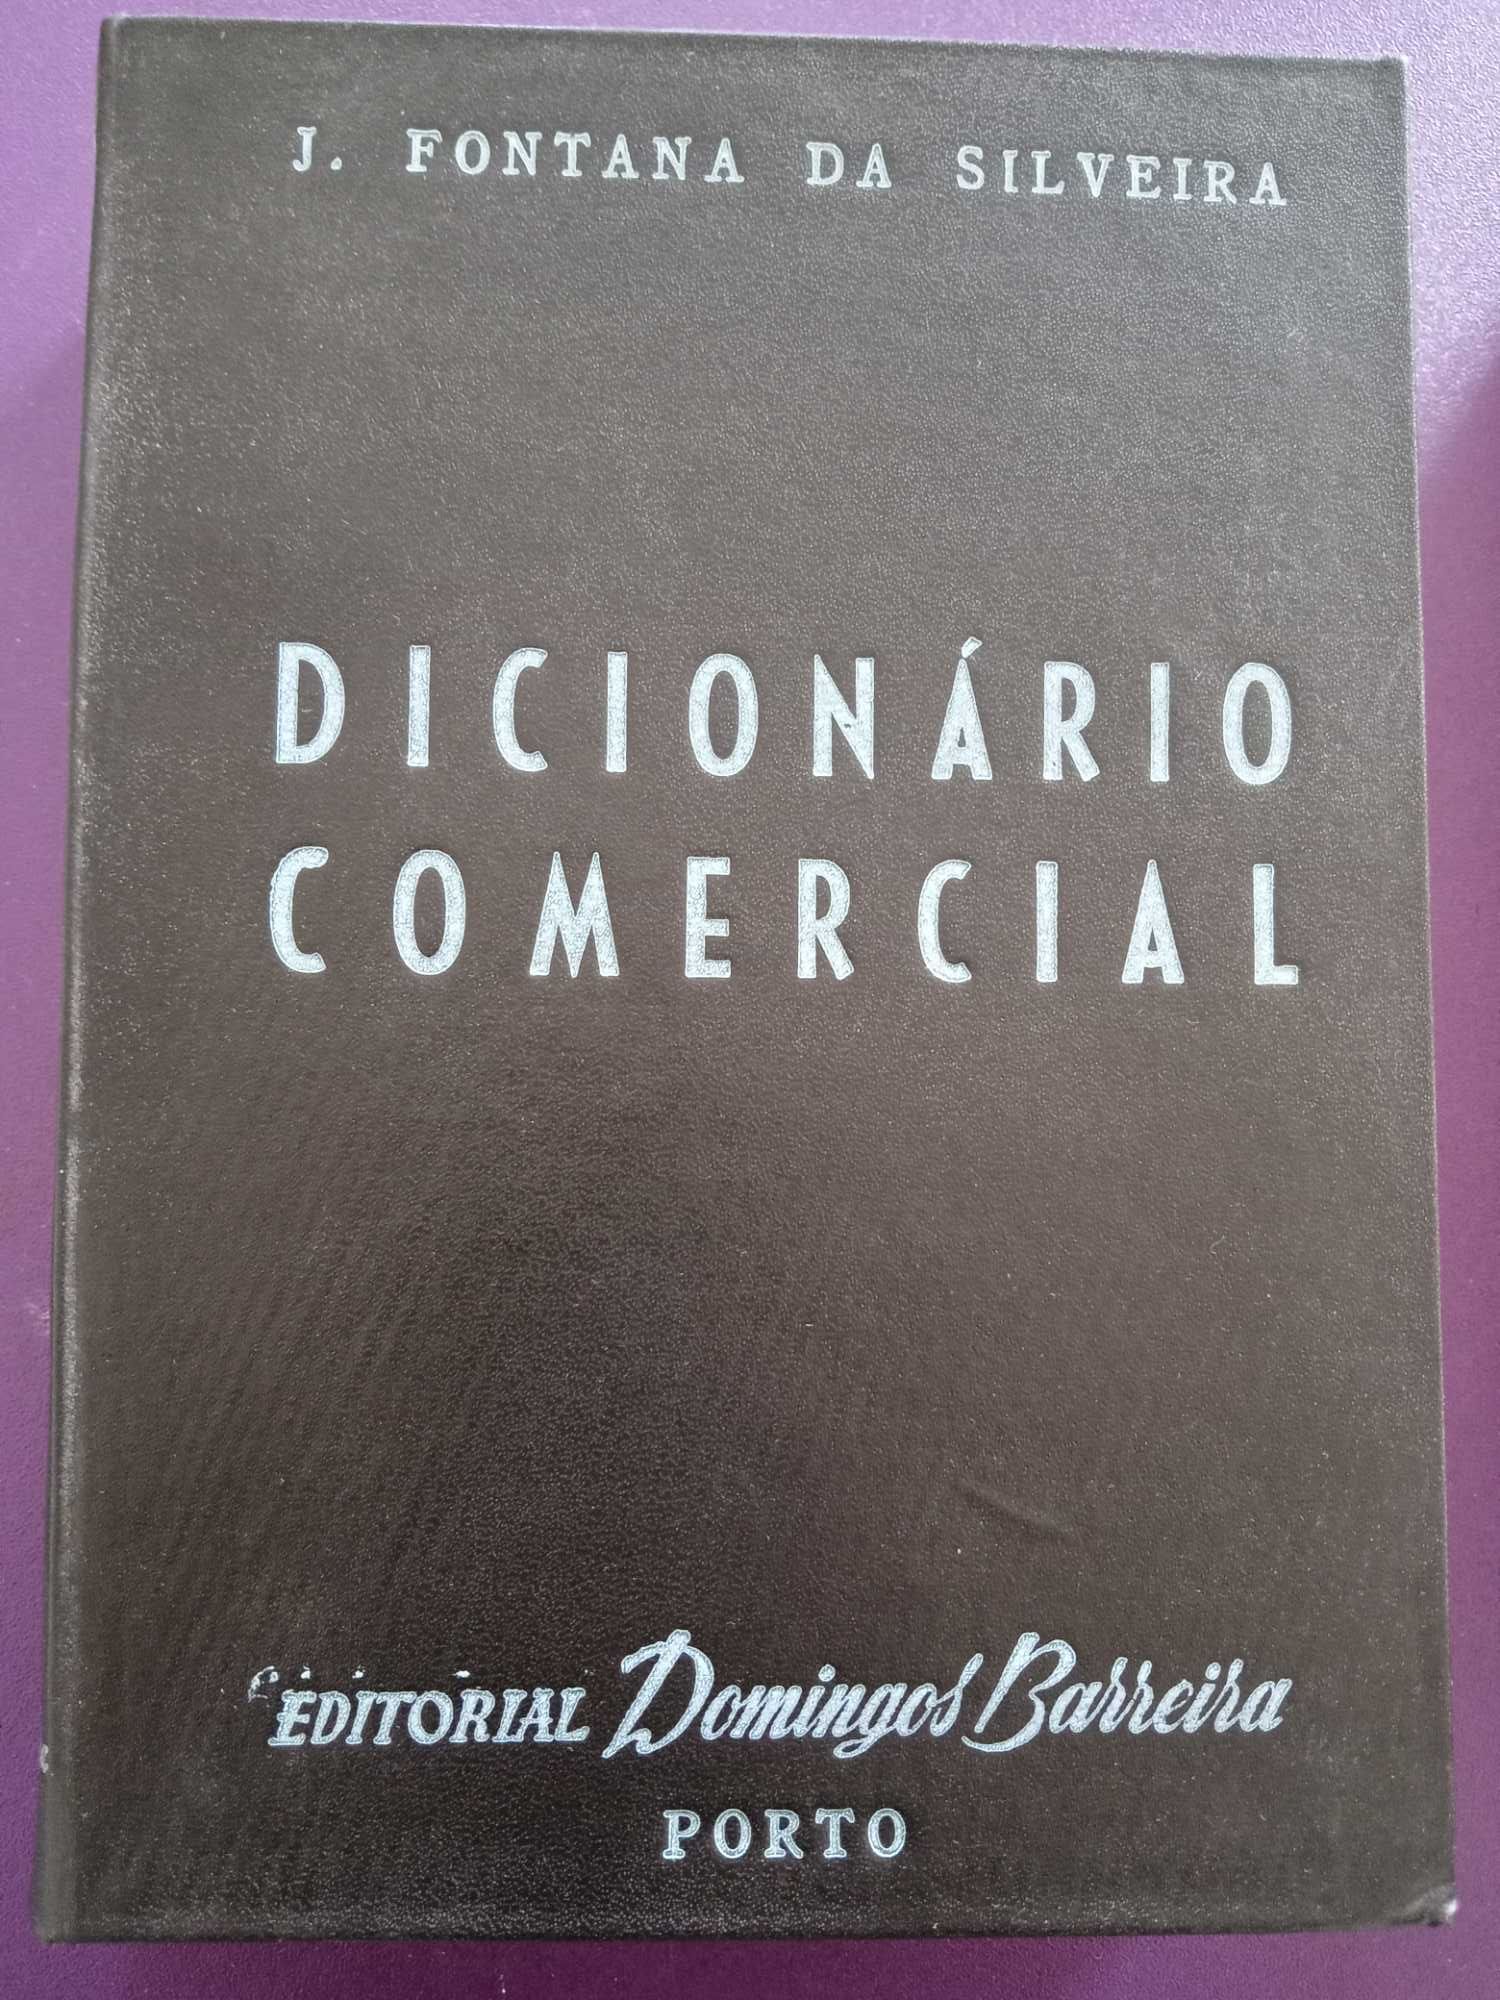 Dicionário Comercial 1945 J. Fontana da Silveira